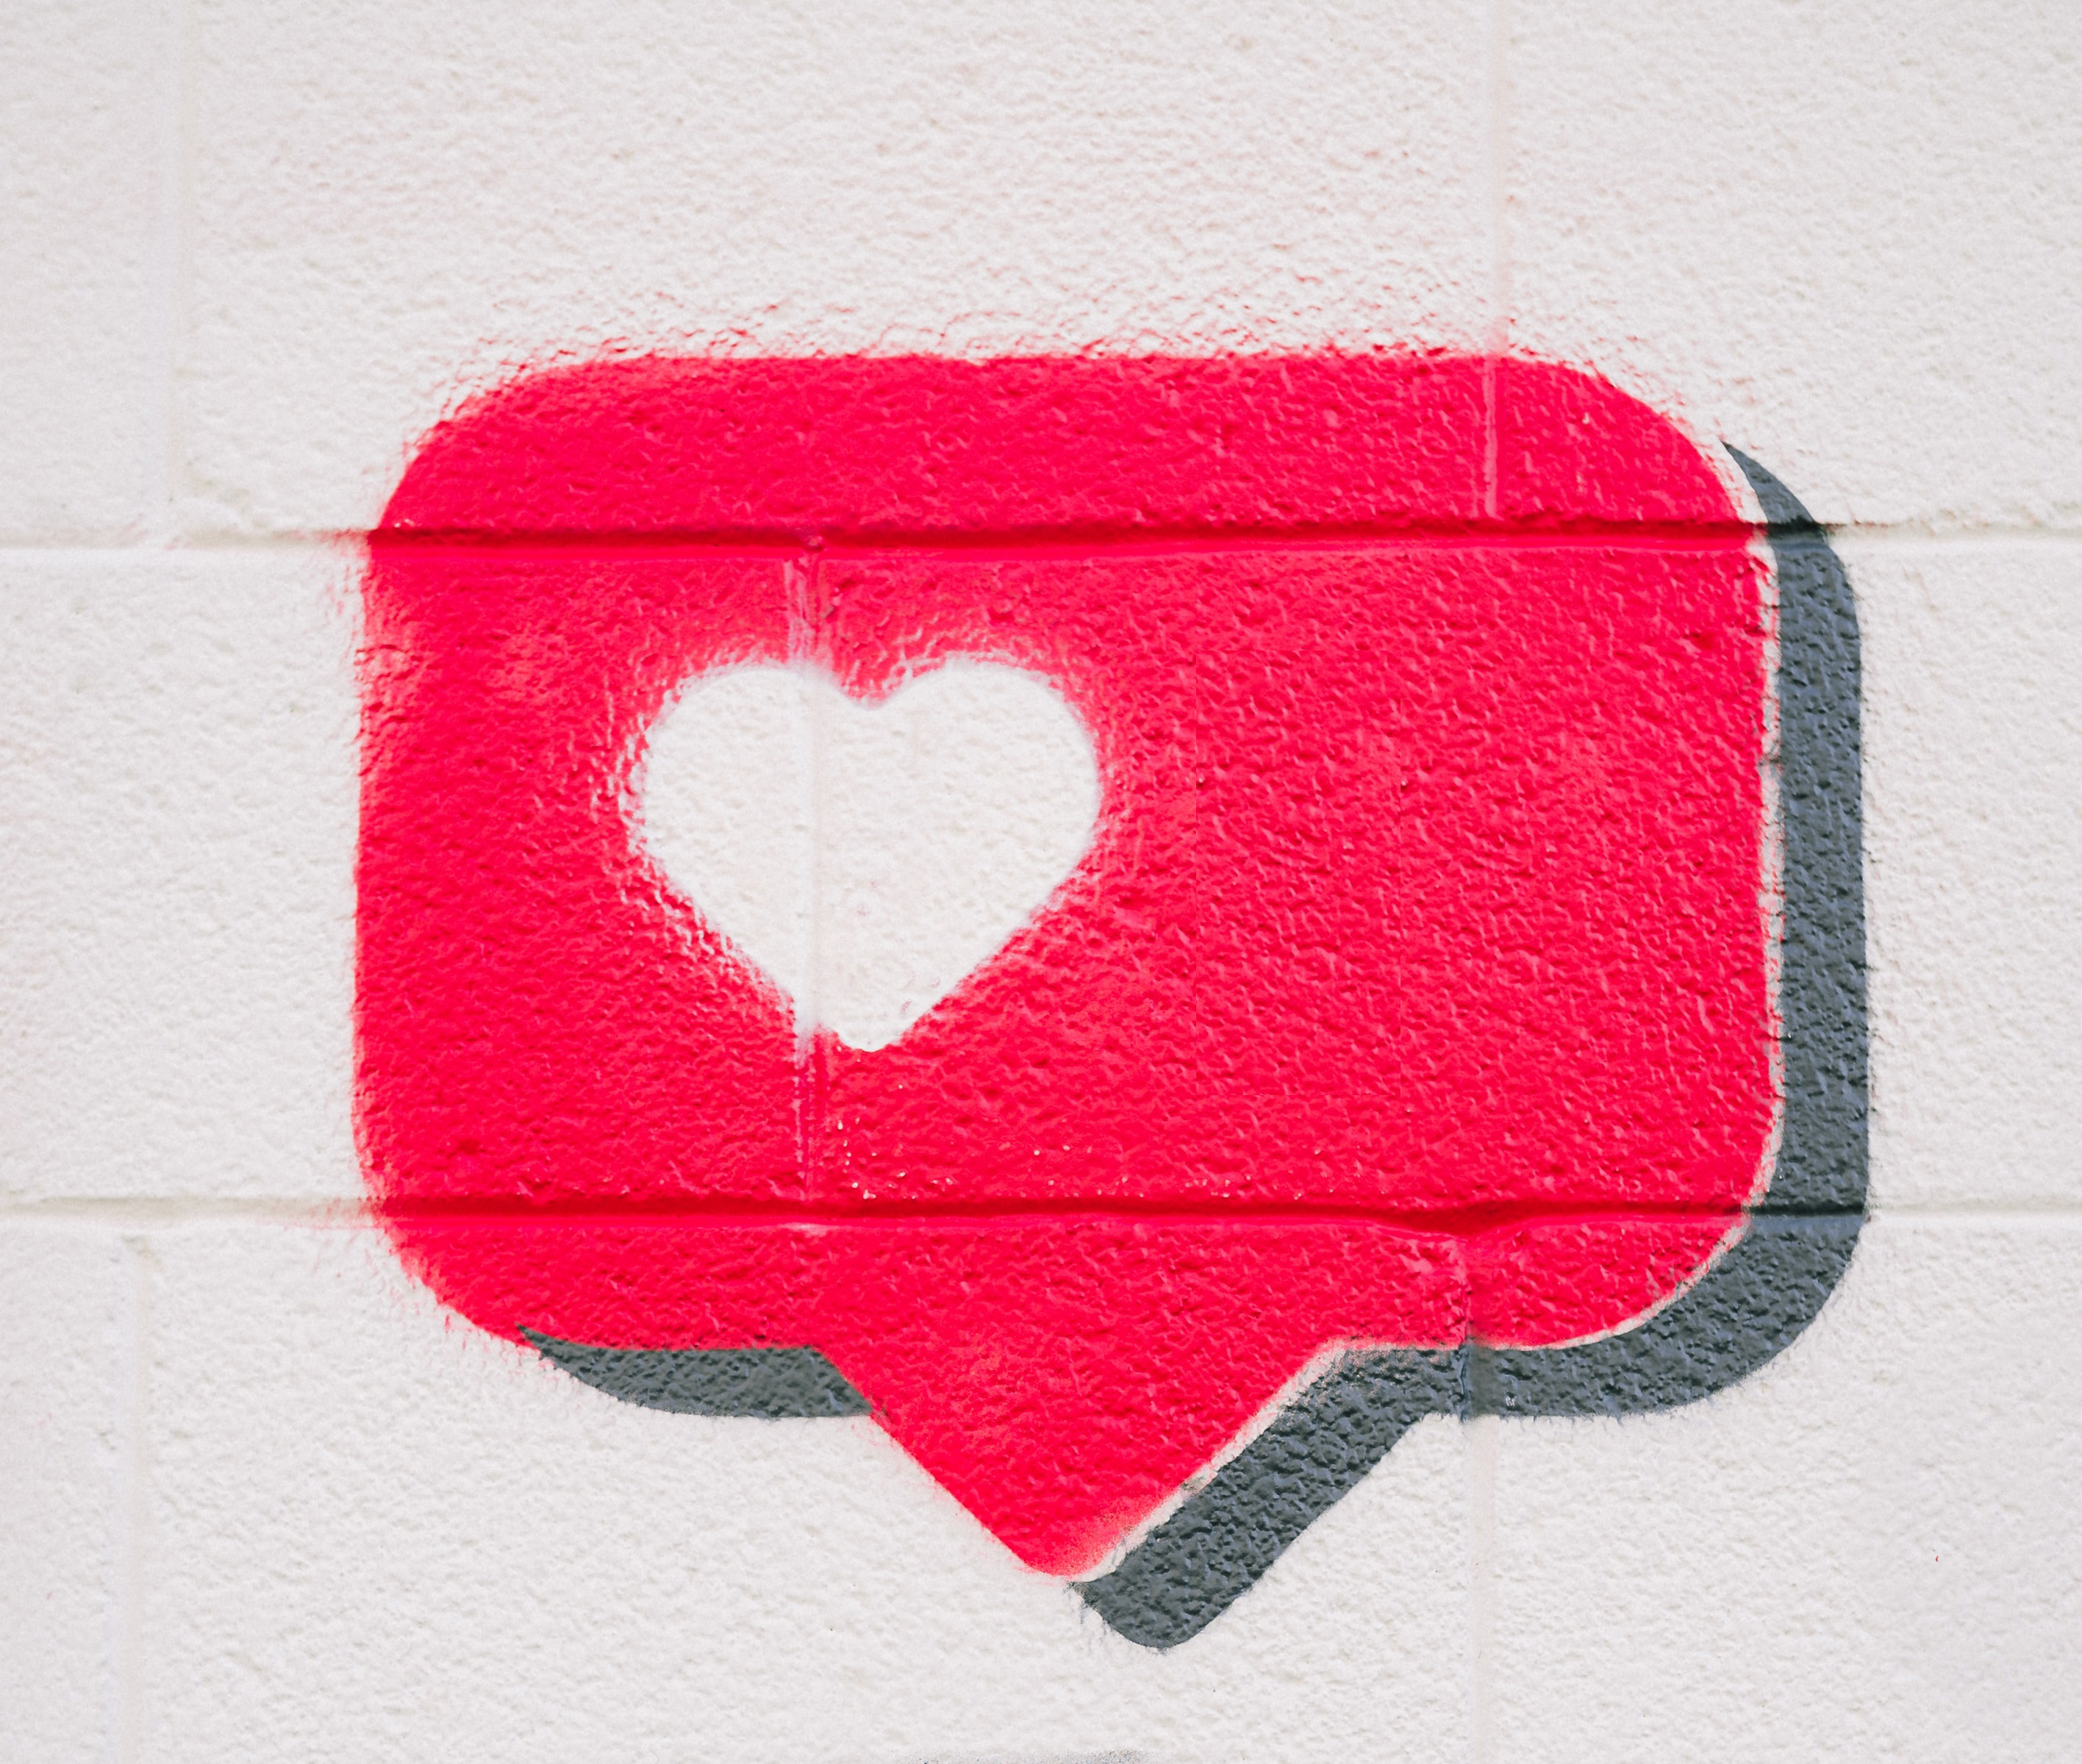 rode tekstballon met wit hartje op een muur (graffiti)